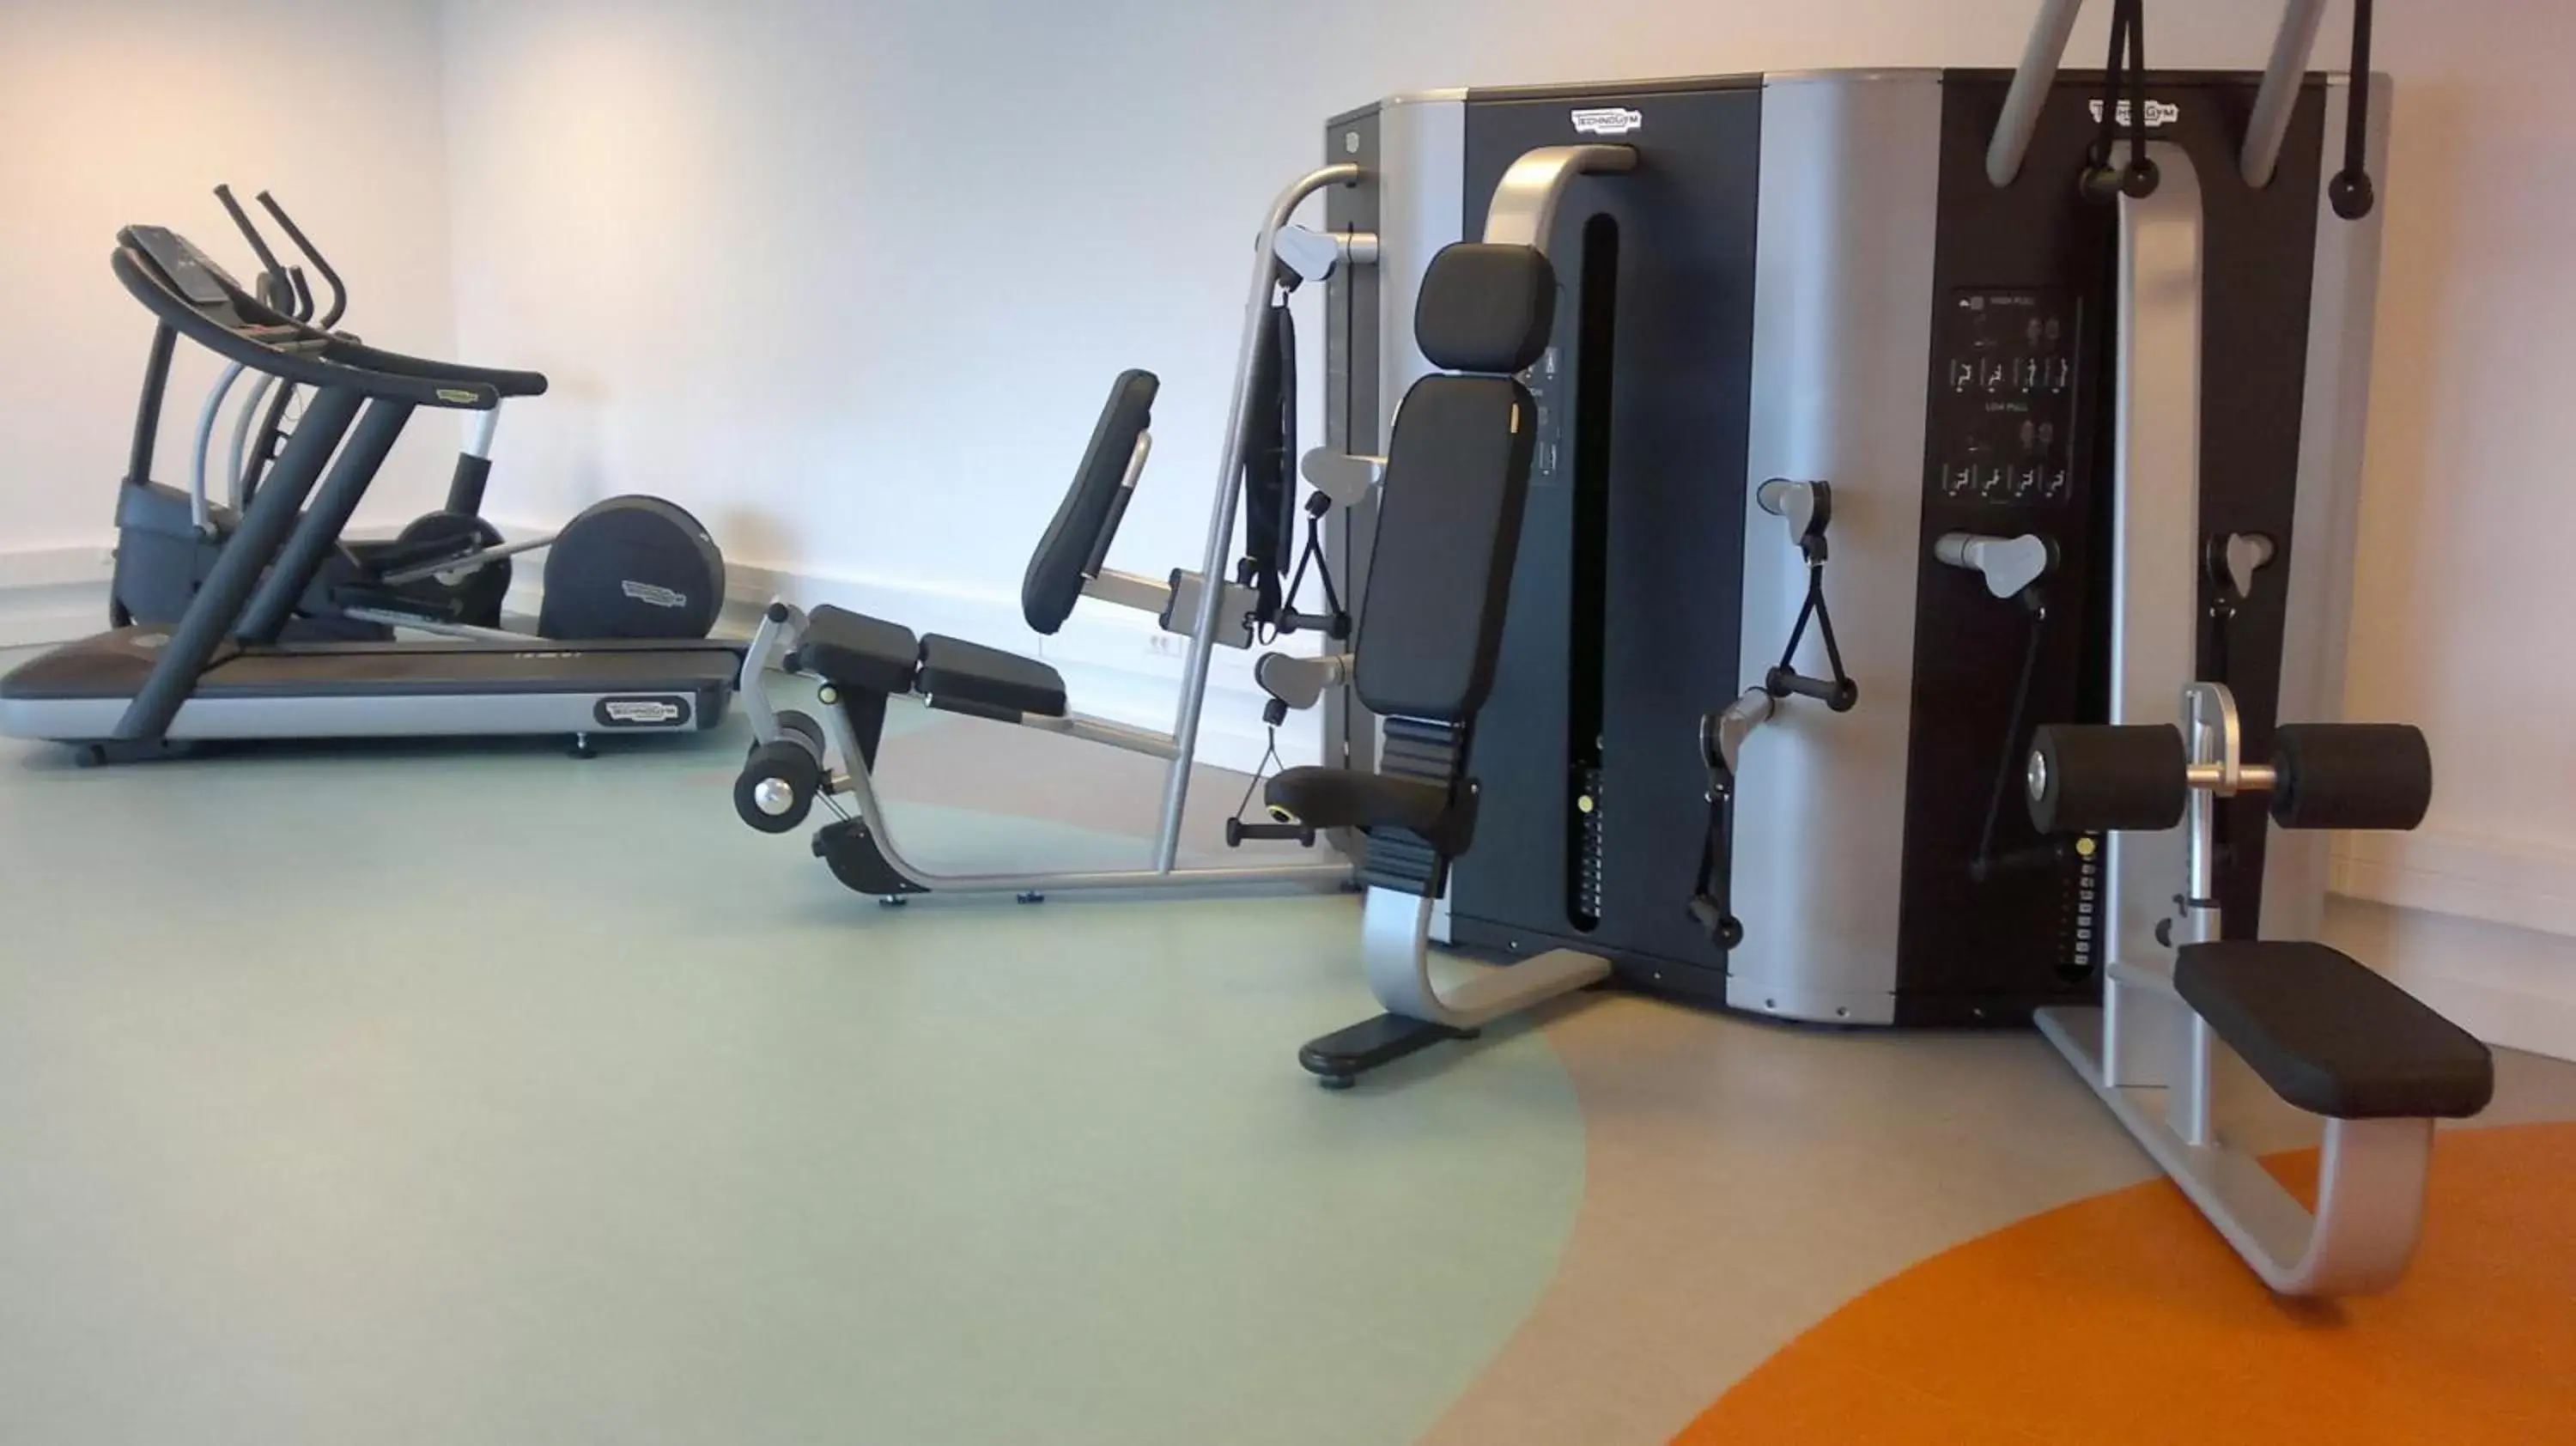 Fitness centre/facilities, Fitness Center/Facilities in Hotel Mercure Braga Centro